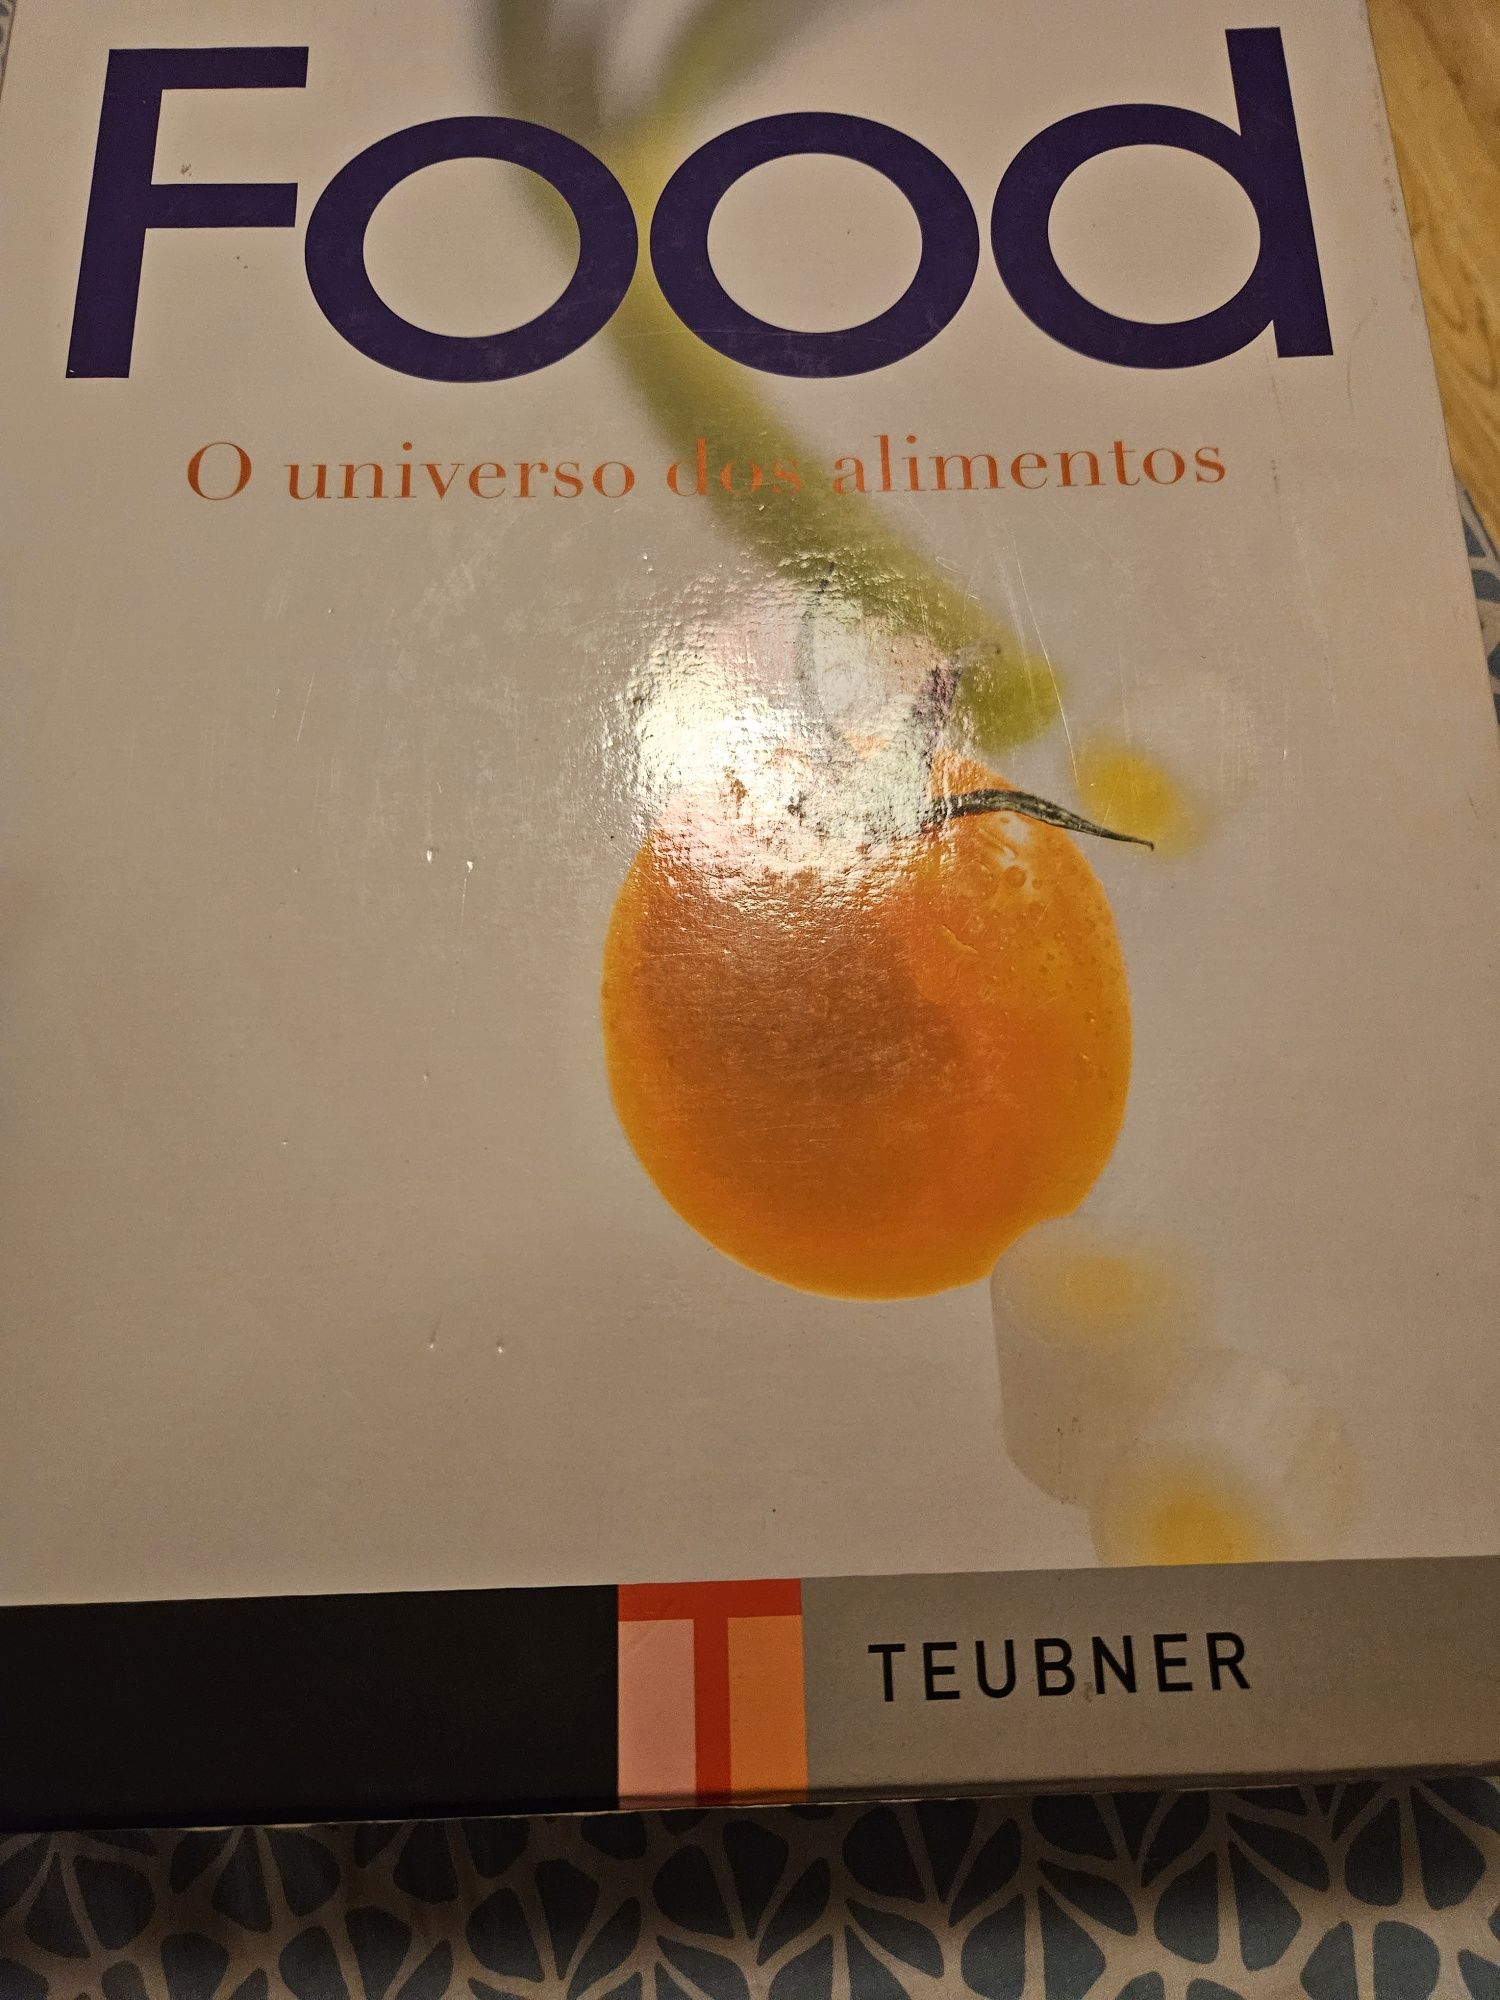 Livro "O universo dos alimentos" Teubner